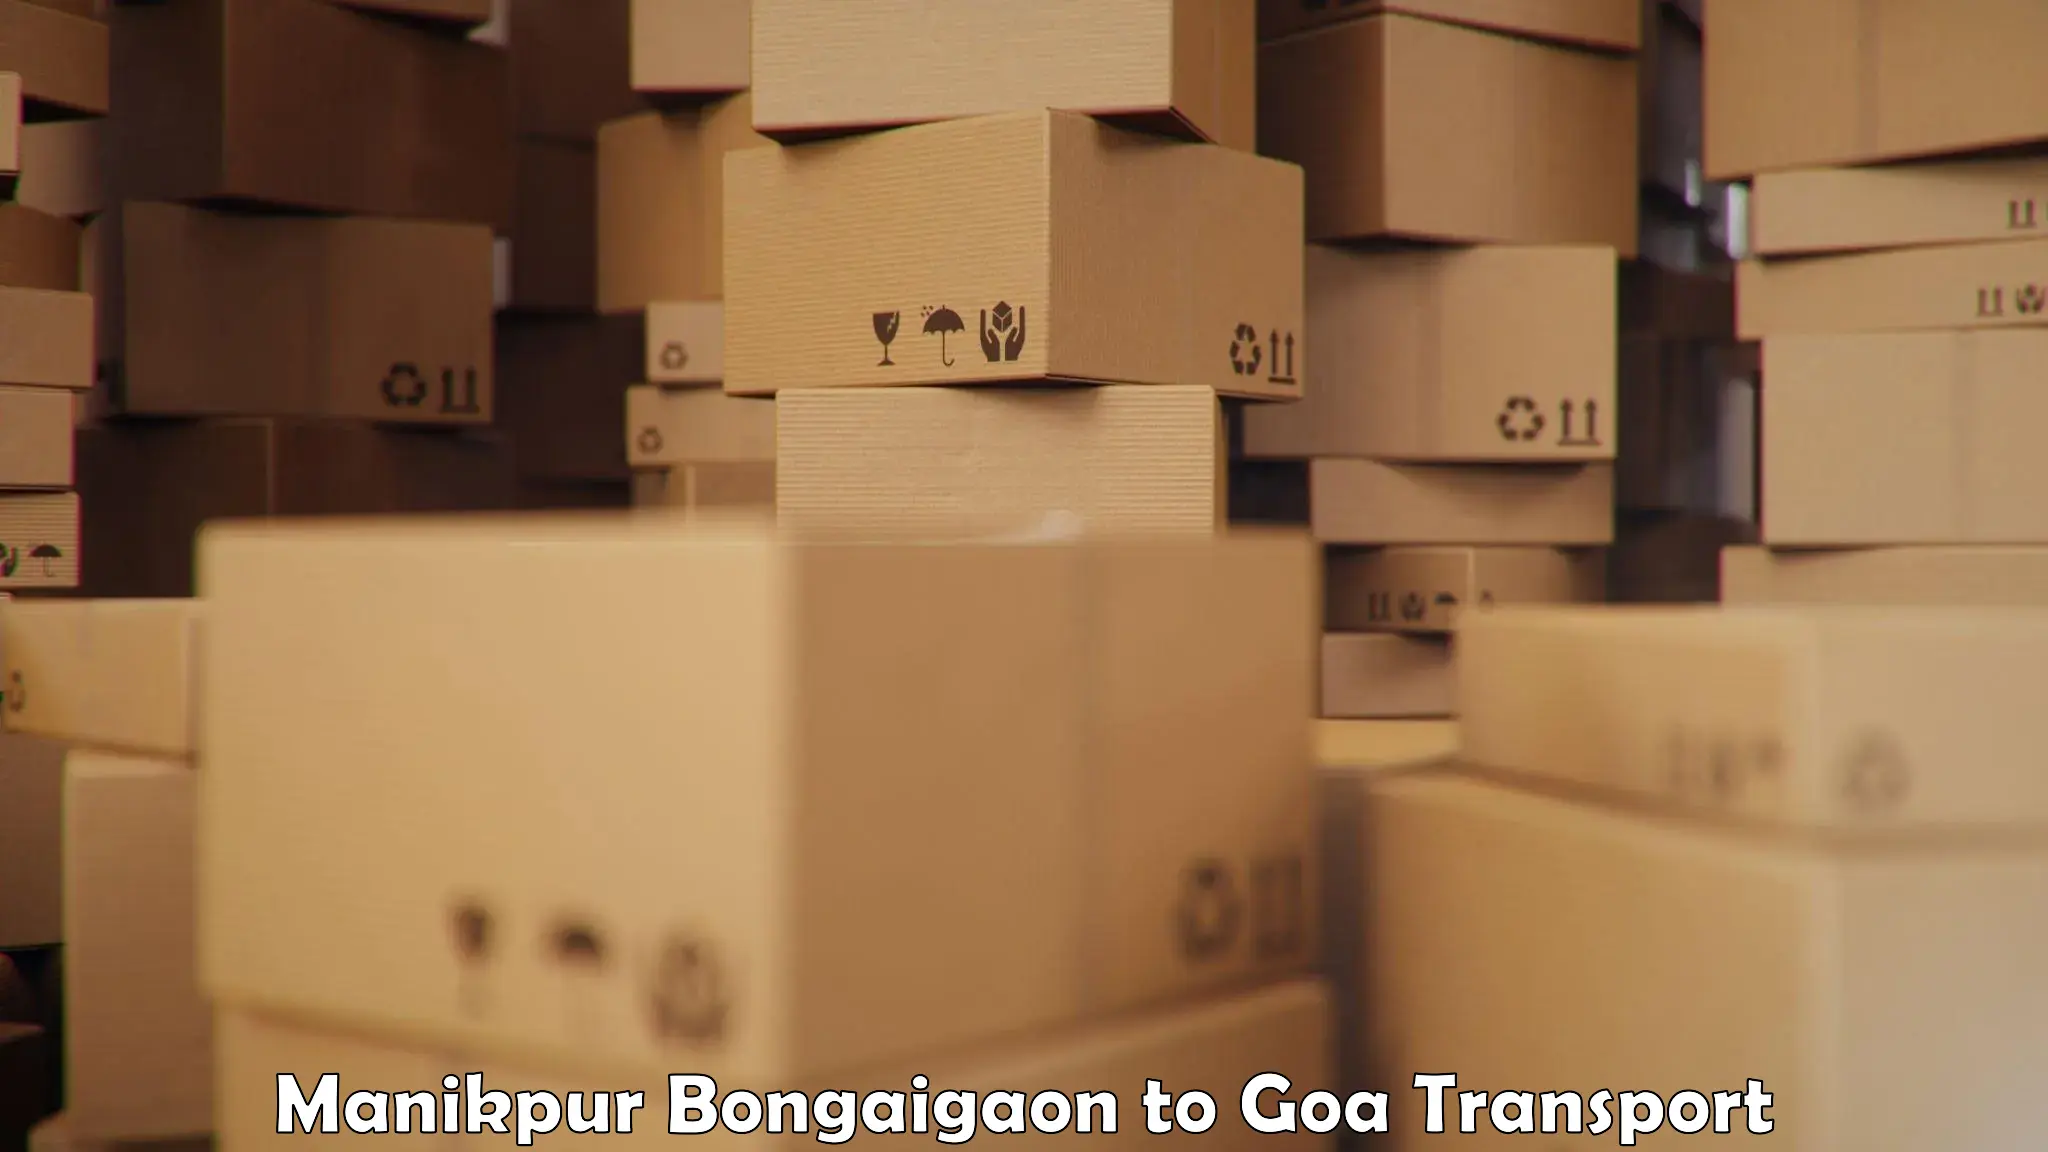 Online transport booking Manikpur Bongaigaon to NIT Goa